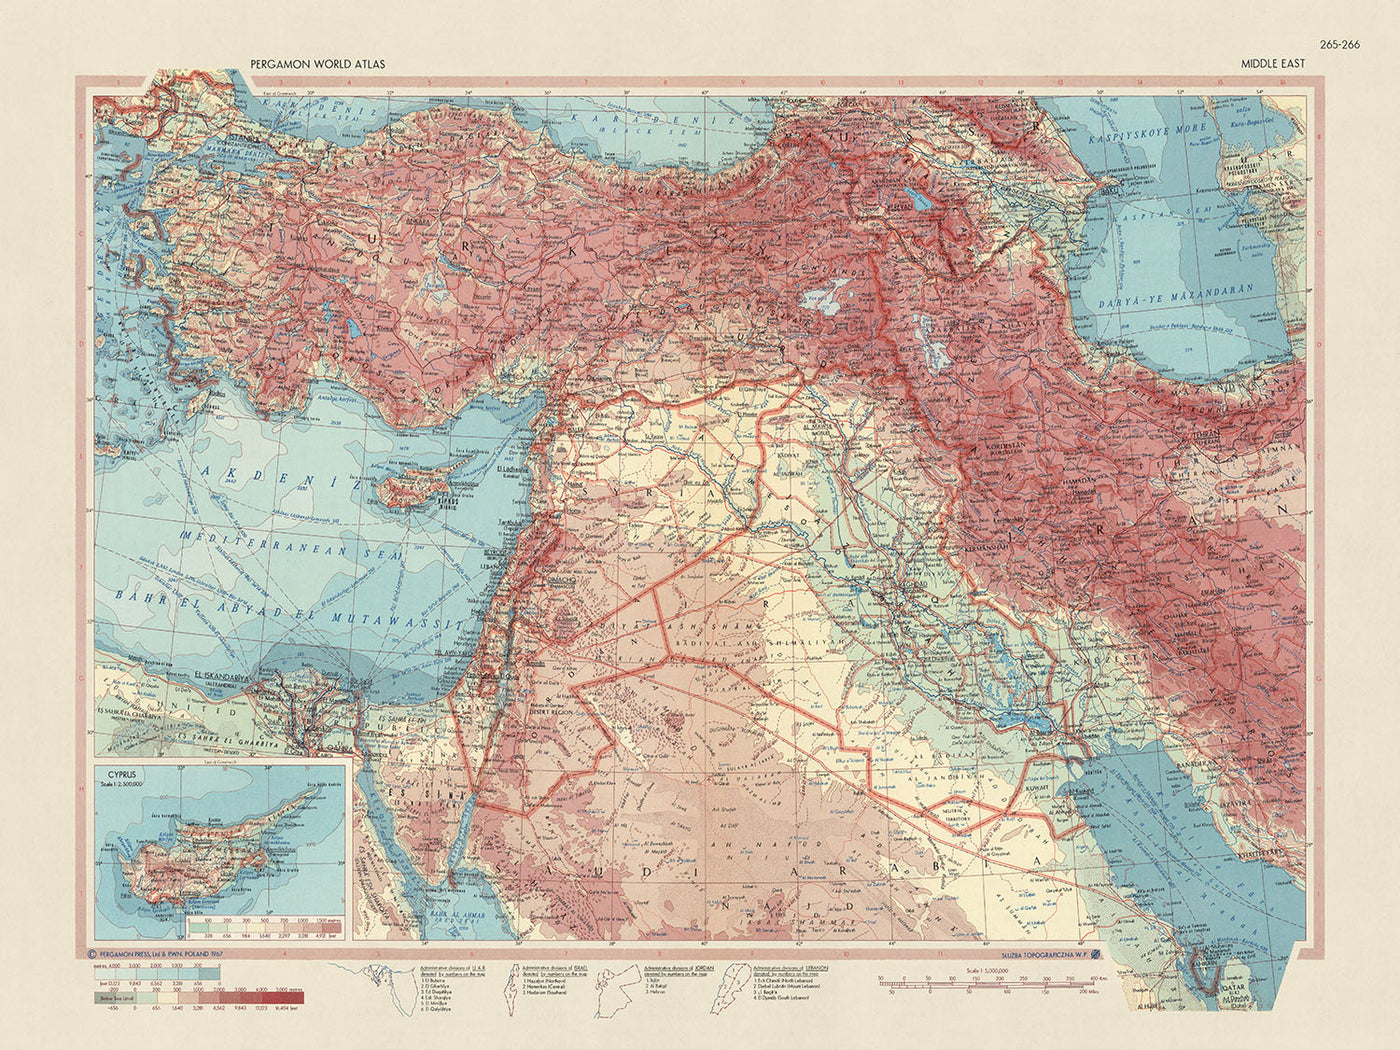 Ancienne carte du Moyen-Orient réalisée par le service topographique de l'armée polonaise, 1967 : représentation politique et physique détaillée, inclusion de Chypre en médaillon, couverture étendue du Qatar au Caire